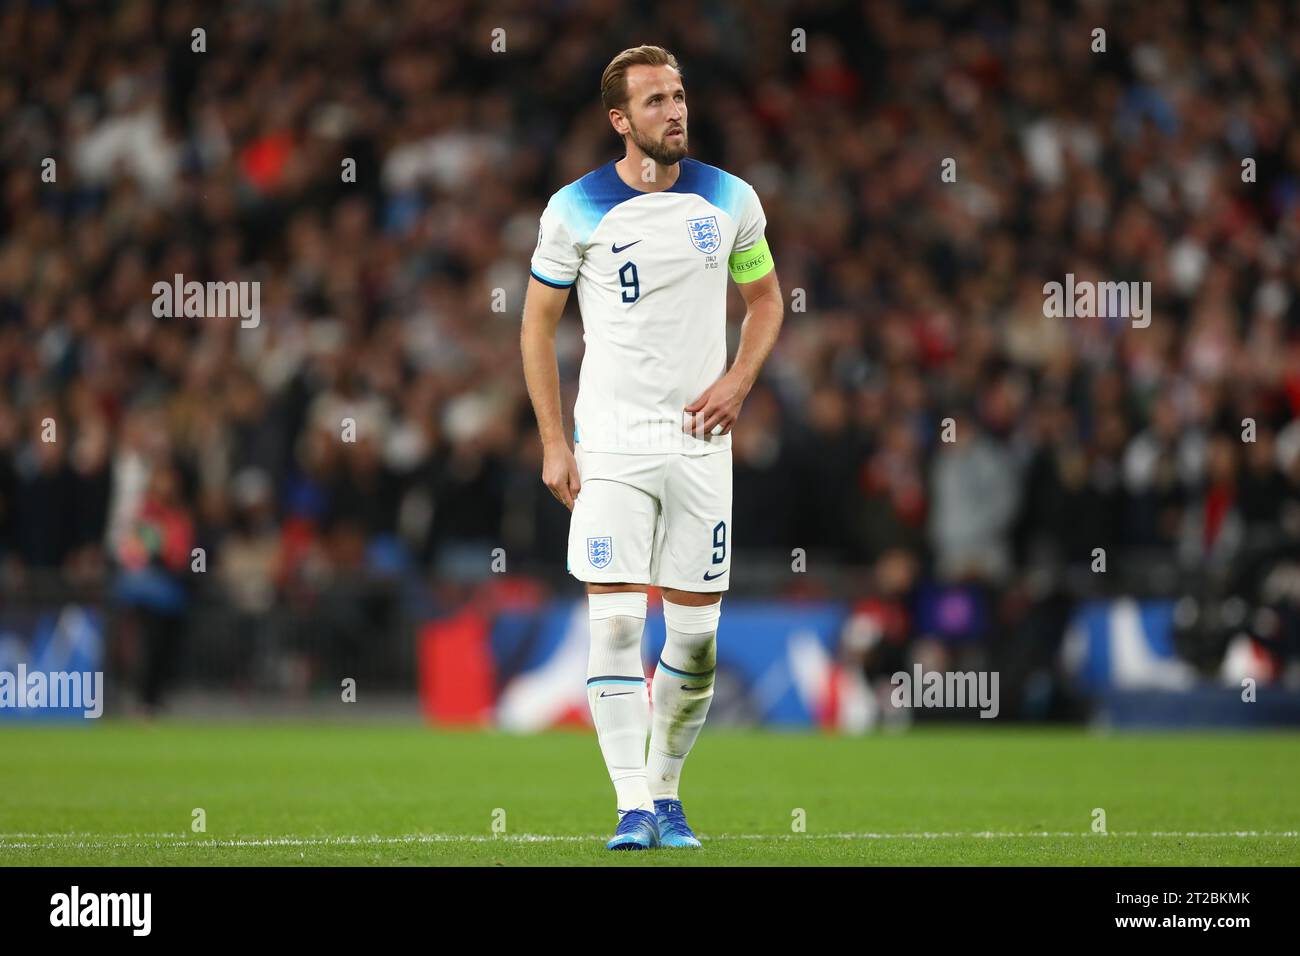 Harry Kane Jogador Inglaterra Durante Partida Qualificação Para Euro 2024 —  Fotografia de Stock Editorial © VincenzoIzzo #648080964